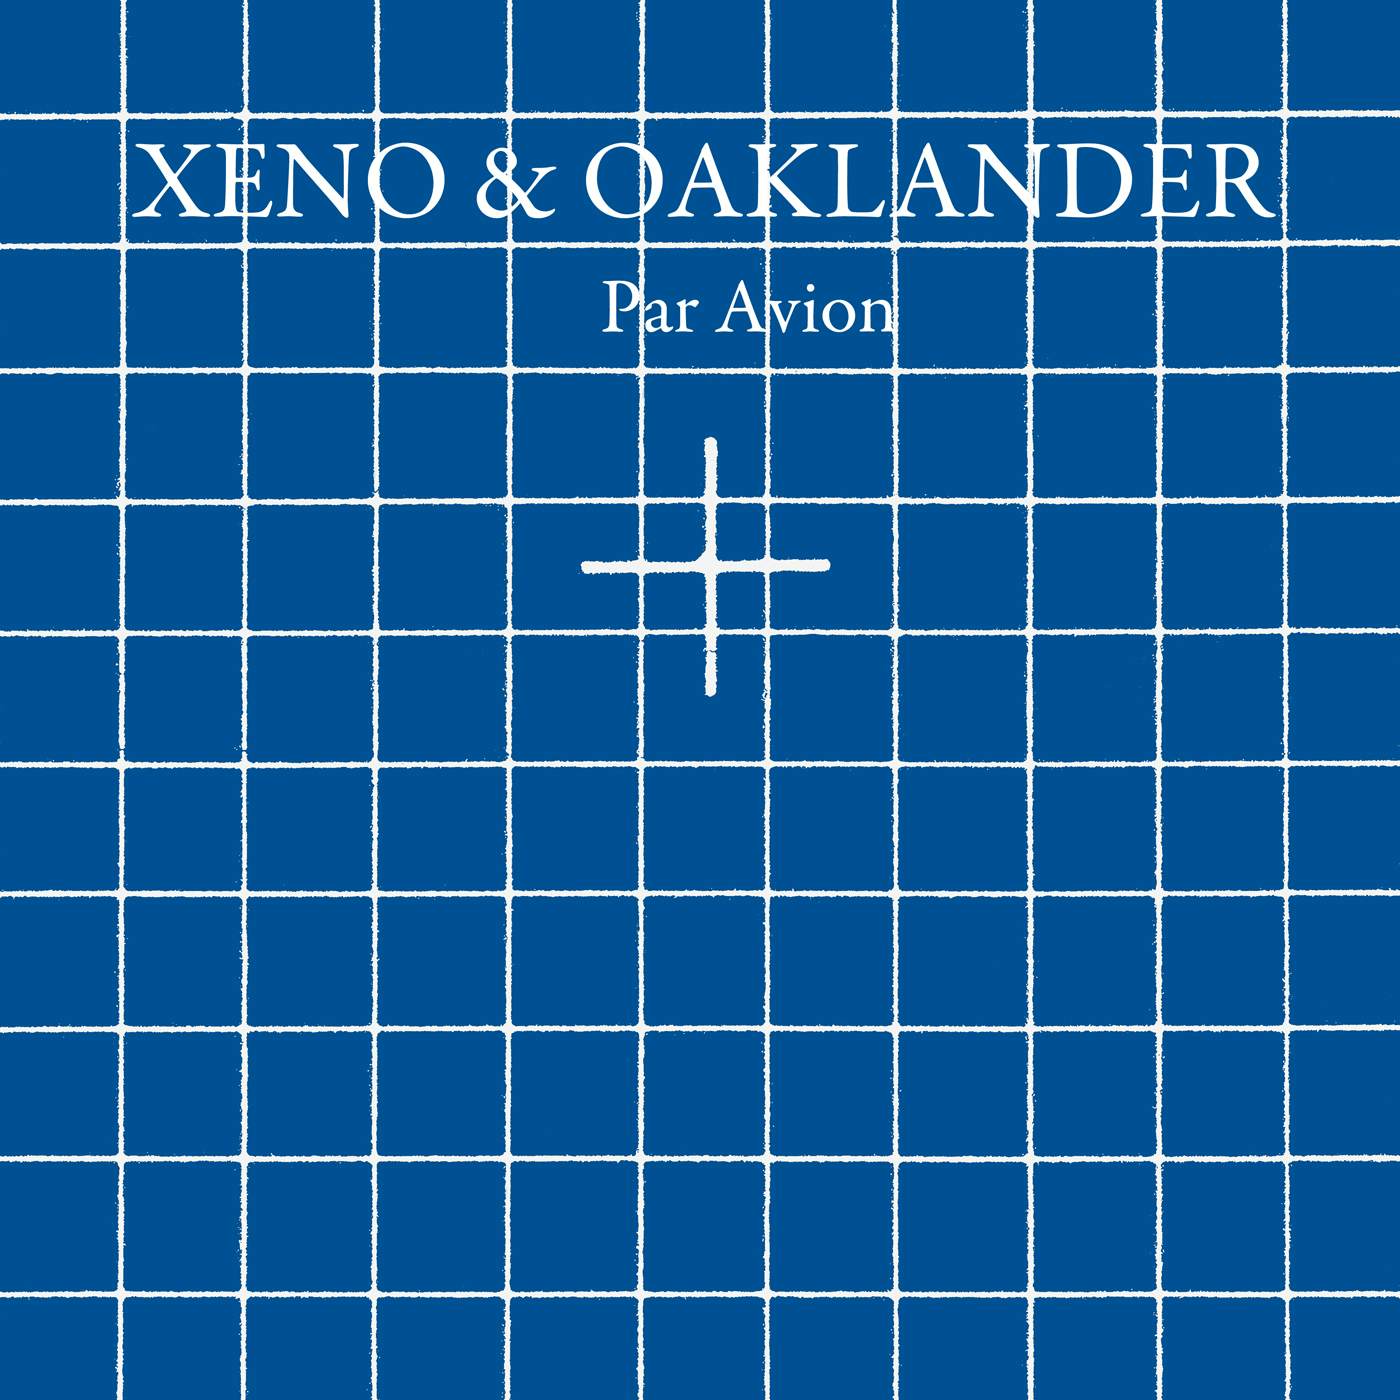 Xeno & Oaklander Par Avion Vinyl Record